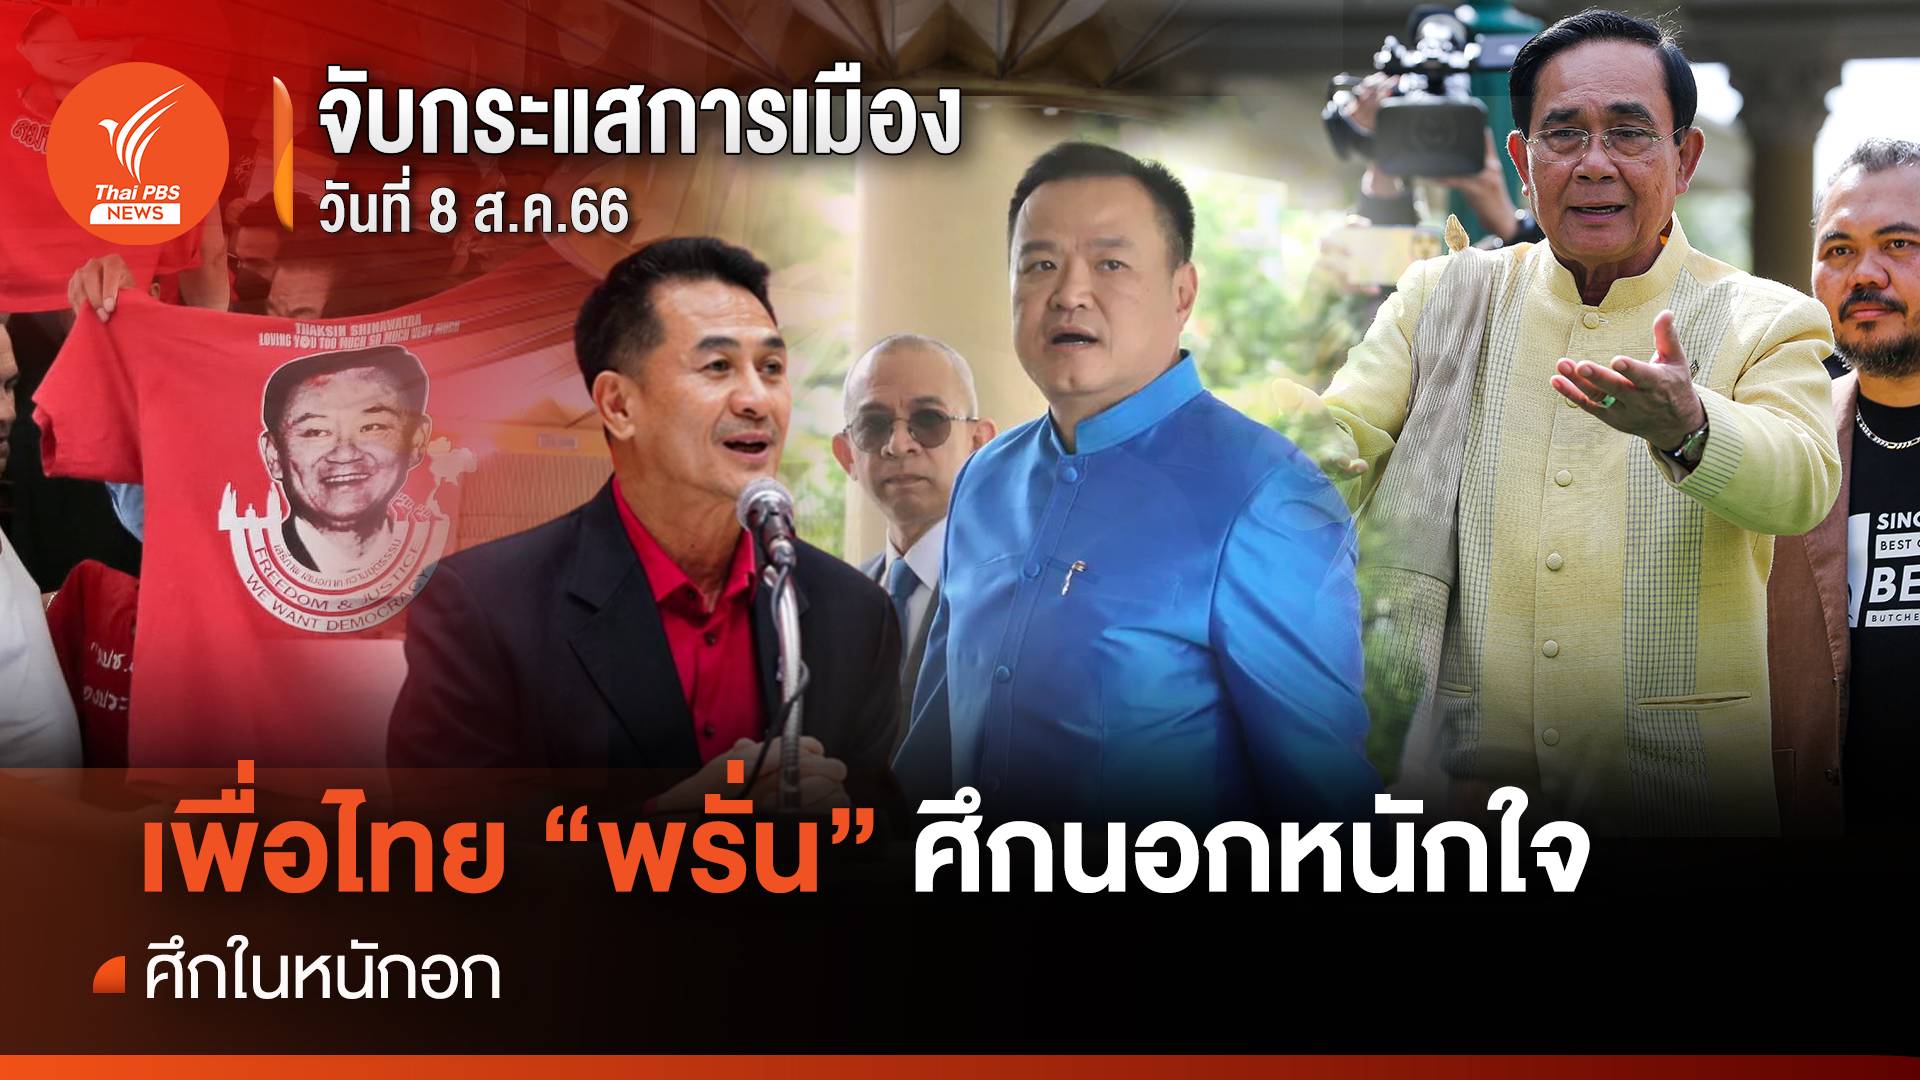 จับกระแสการเมือง : วันที่ 8 ส.ค. 2566 เพื่อไทย “พรั่น” ศึกนอกหนักใจ ศึกในหนักอก